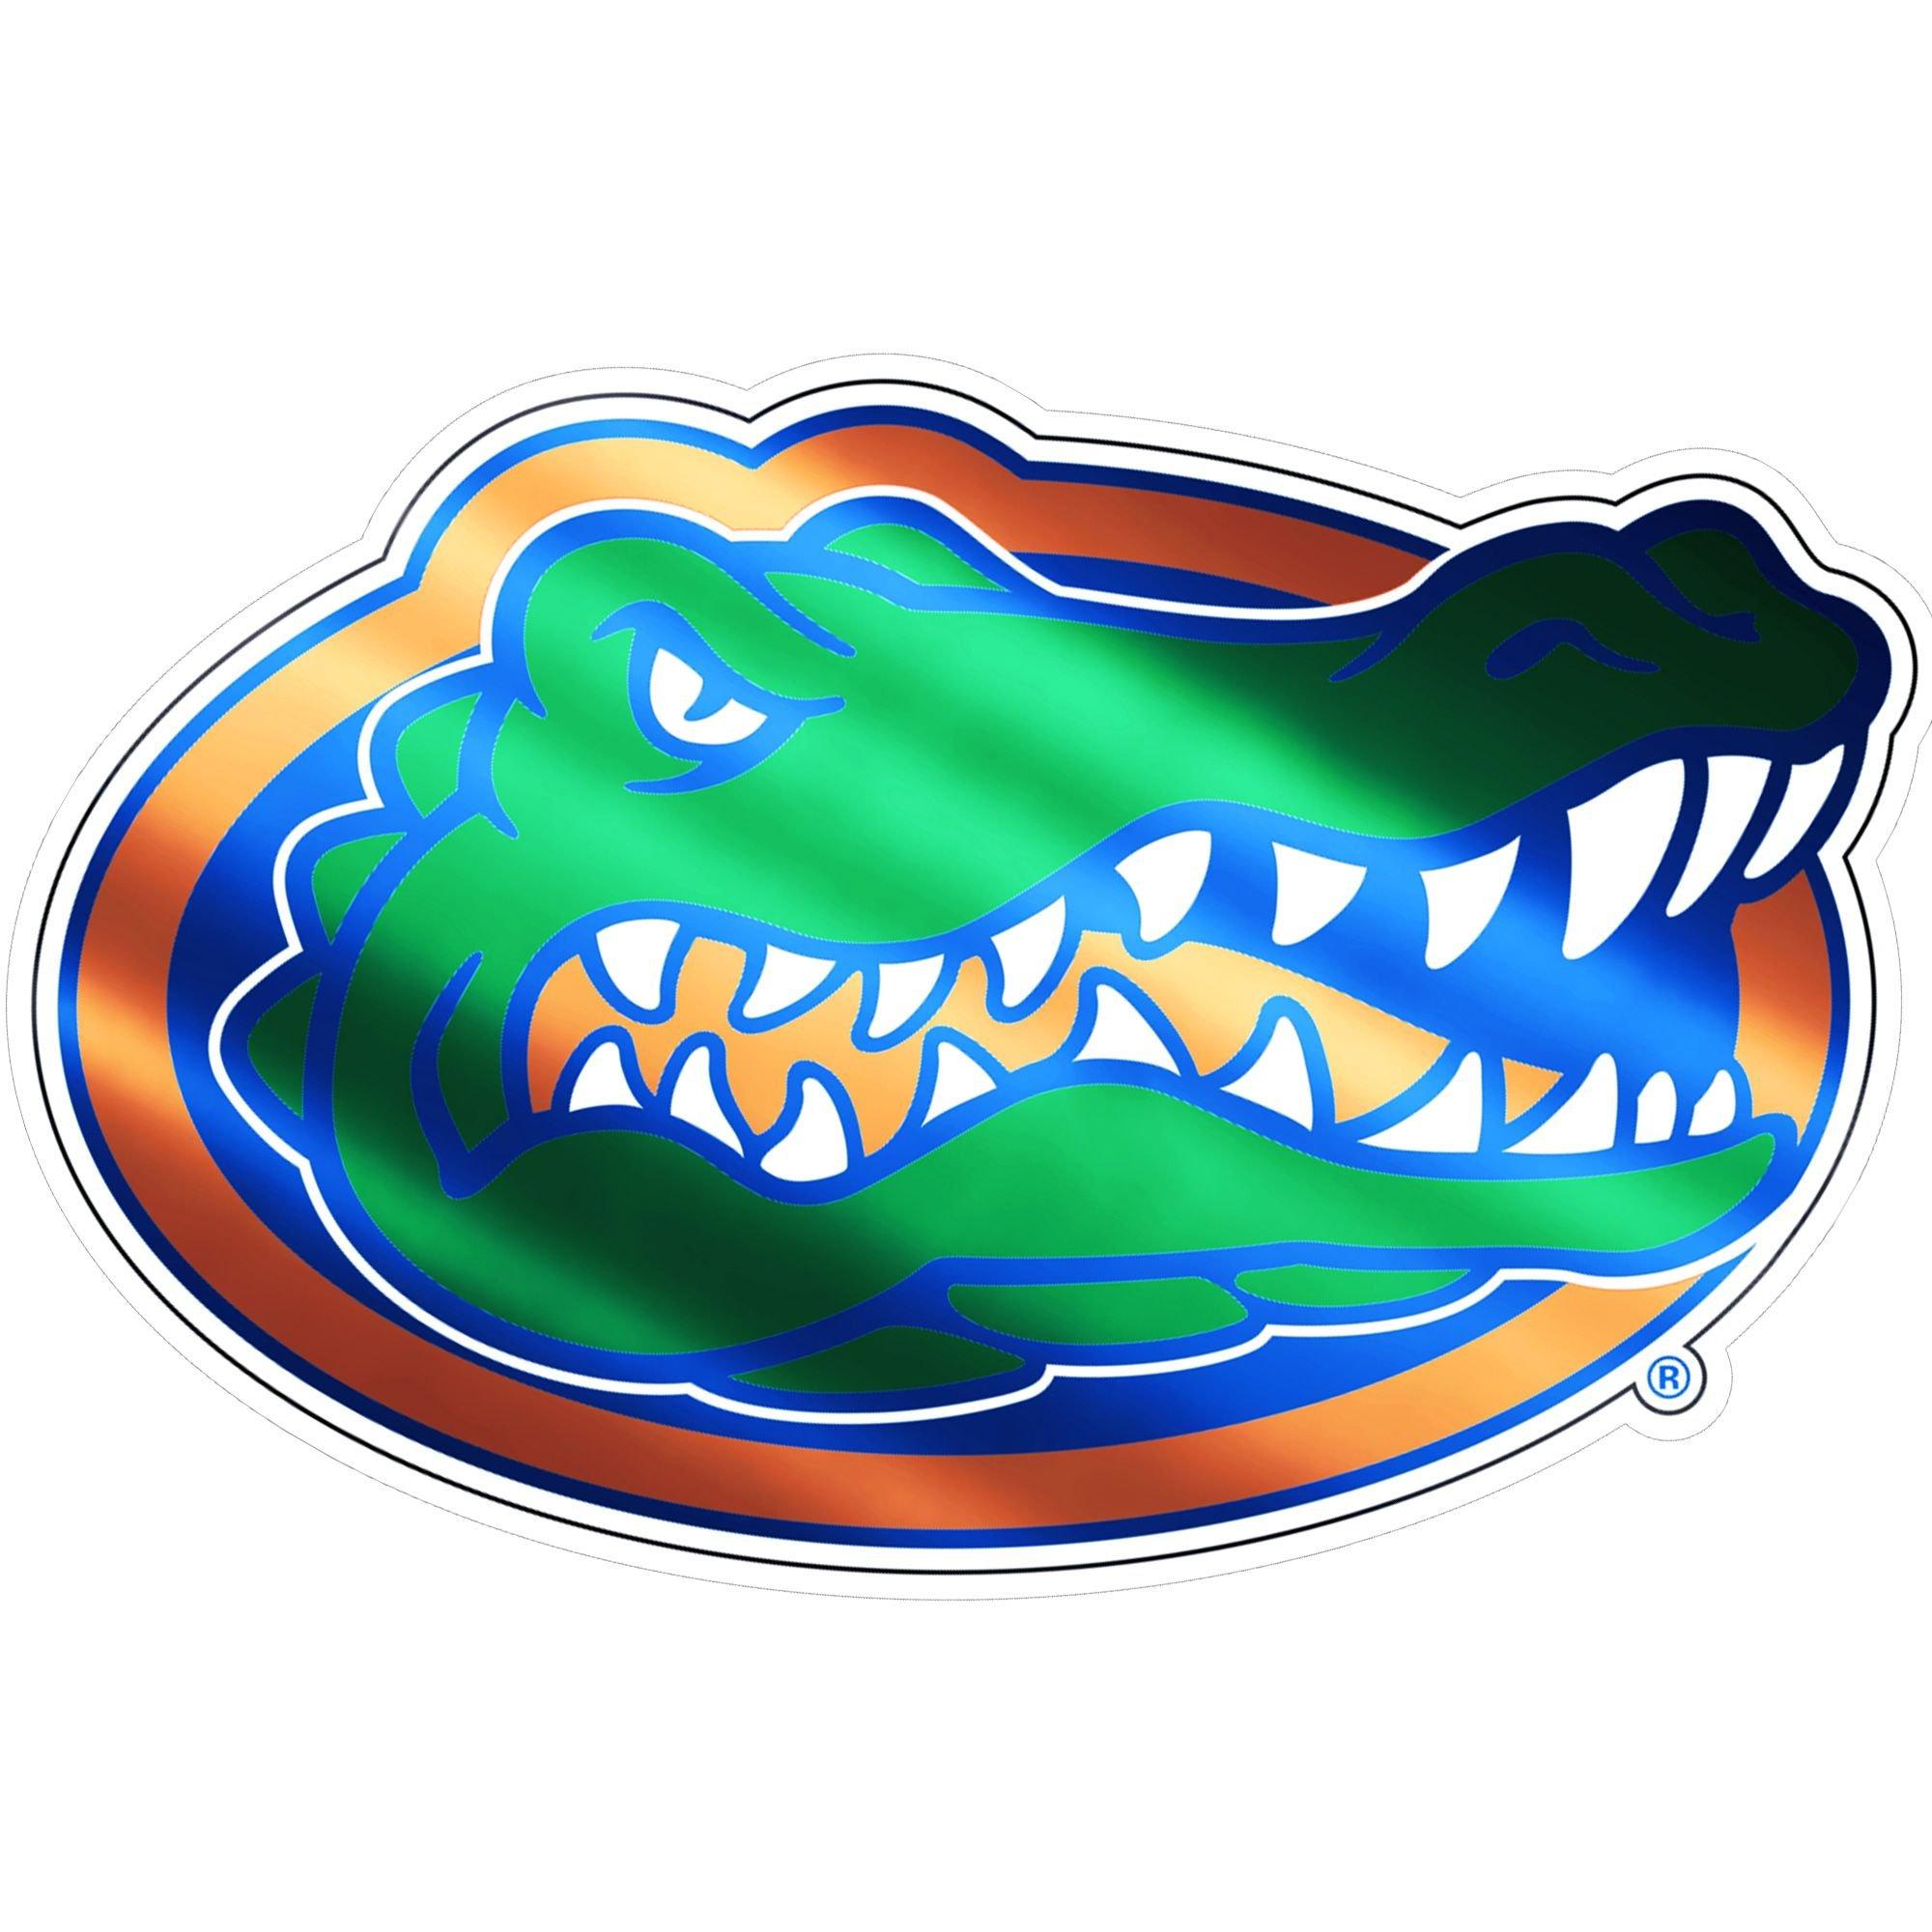 cool gators logo